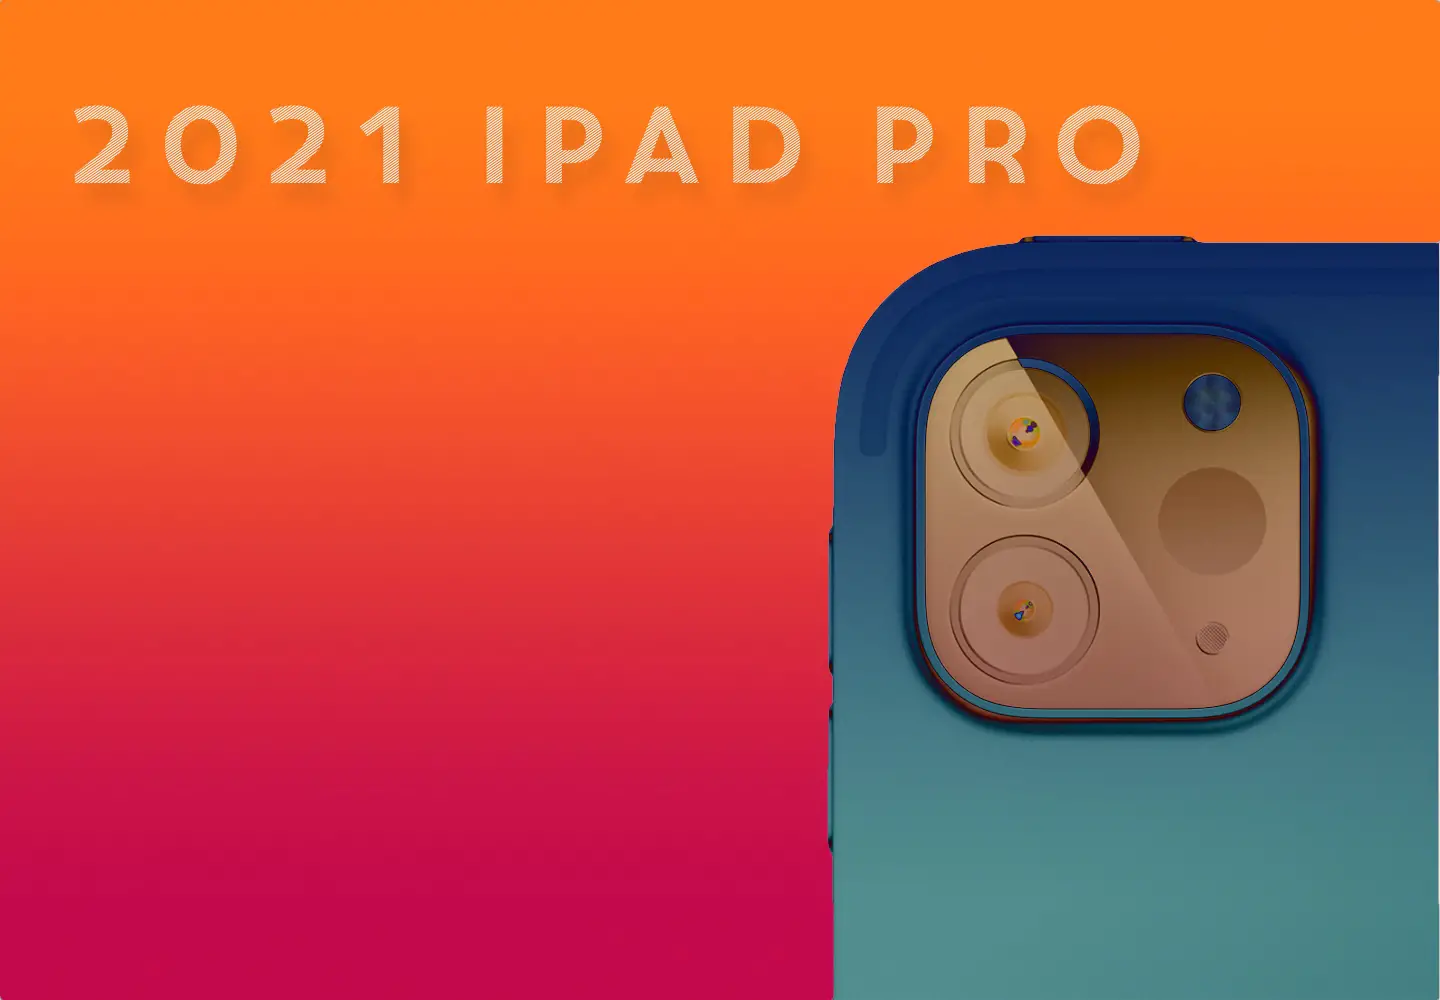 New iPad Pro 2021